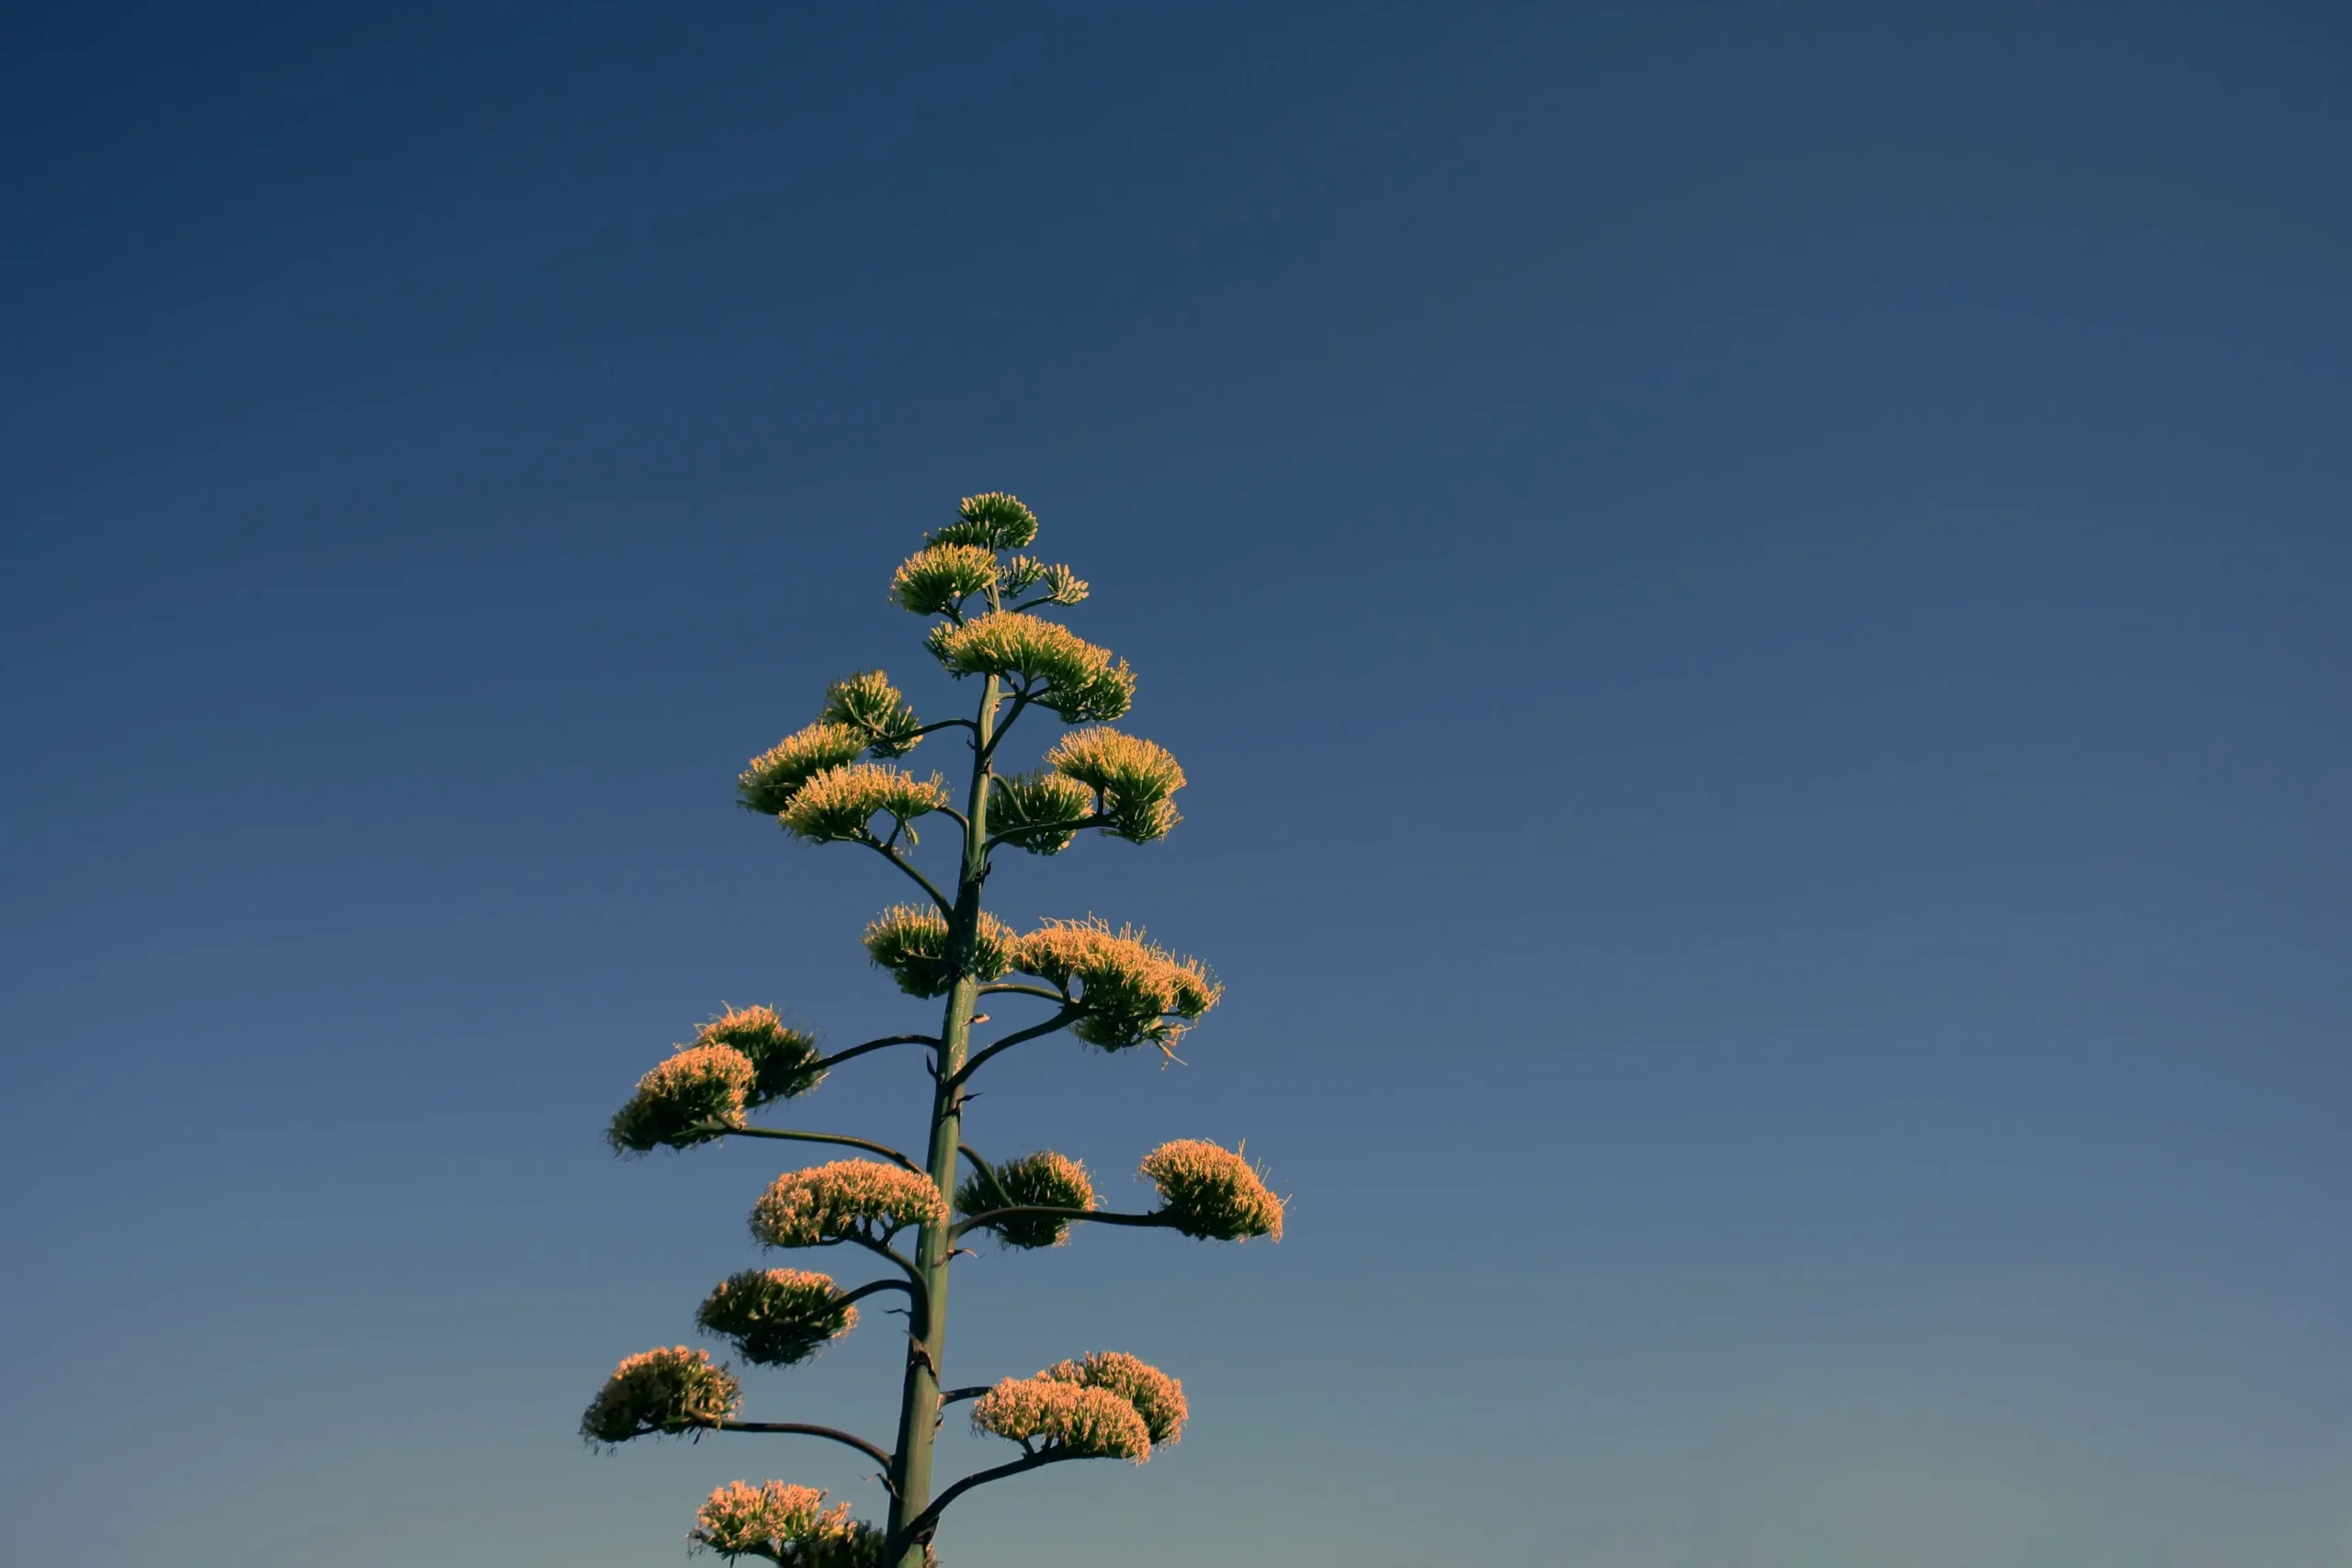 fiore agave gigante - Quanti tipi di agave ci sono